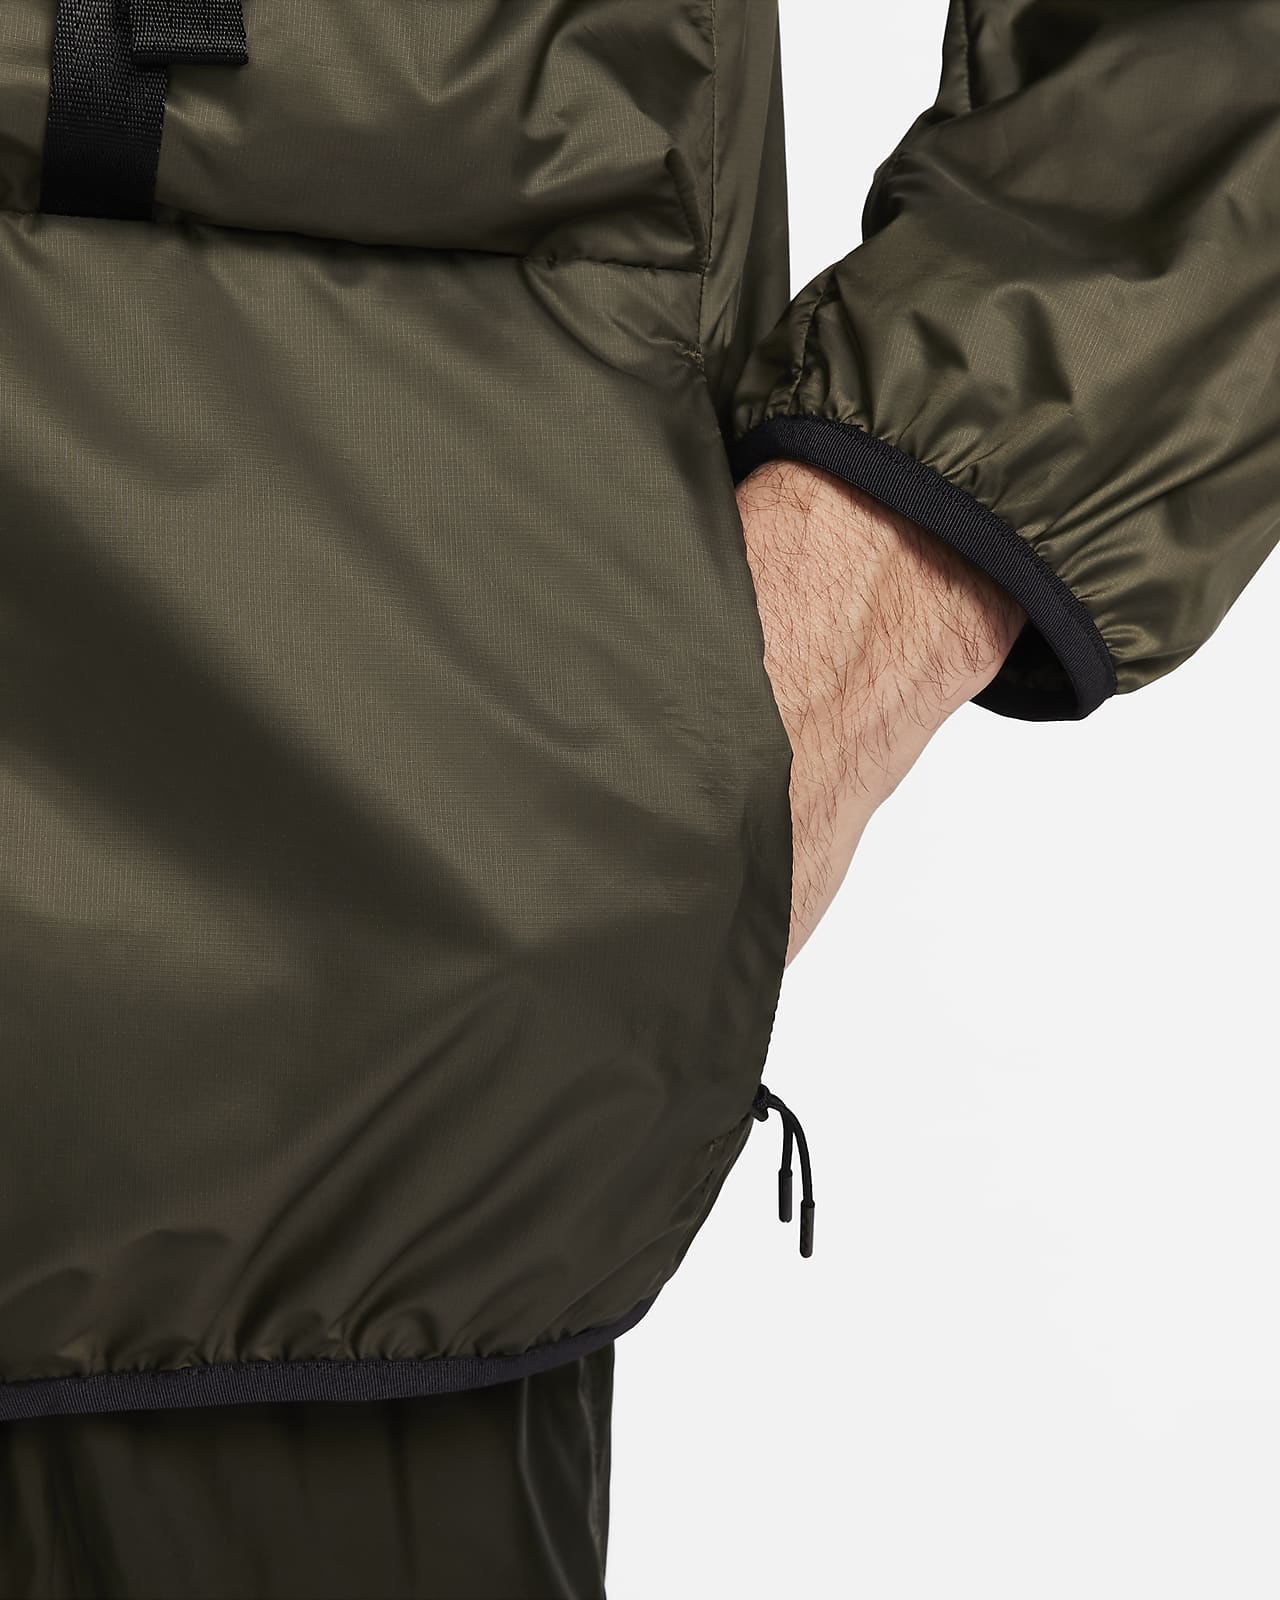 Nike Sportswear Tech Woven Men's N24 Packable Lined Jacket